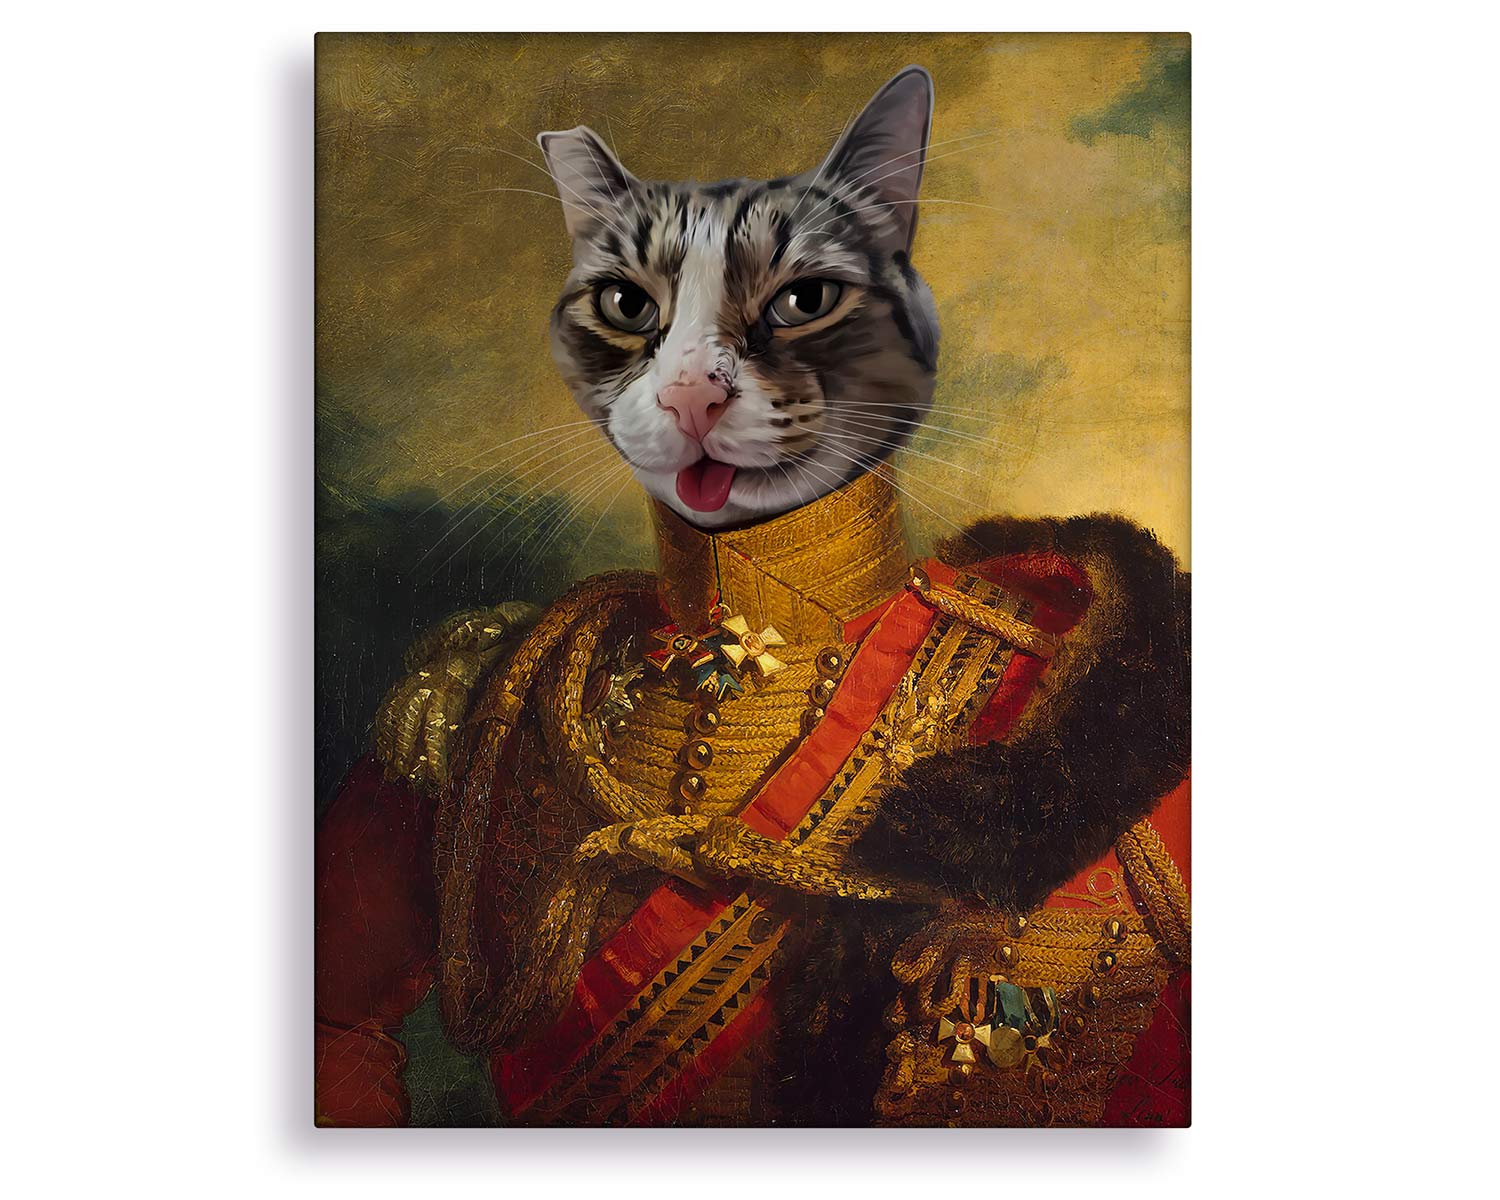 The Colonel - Cat Renaissance Painting | Pixels Photo Art